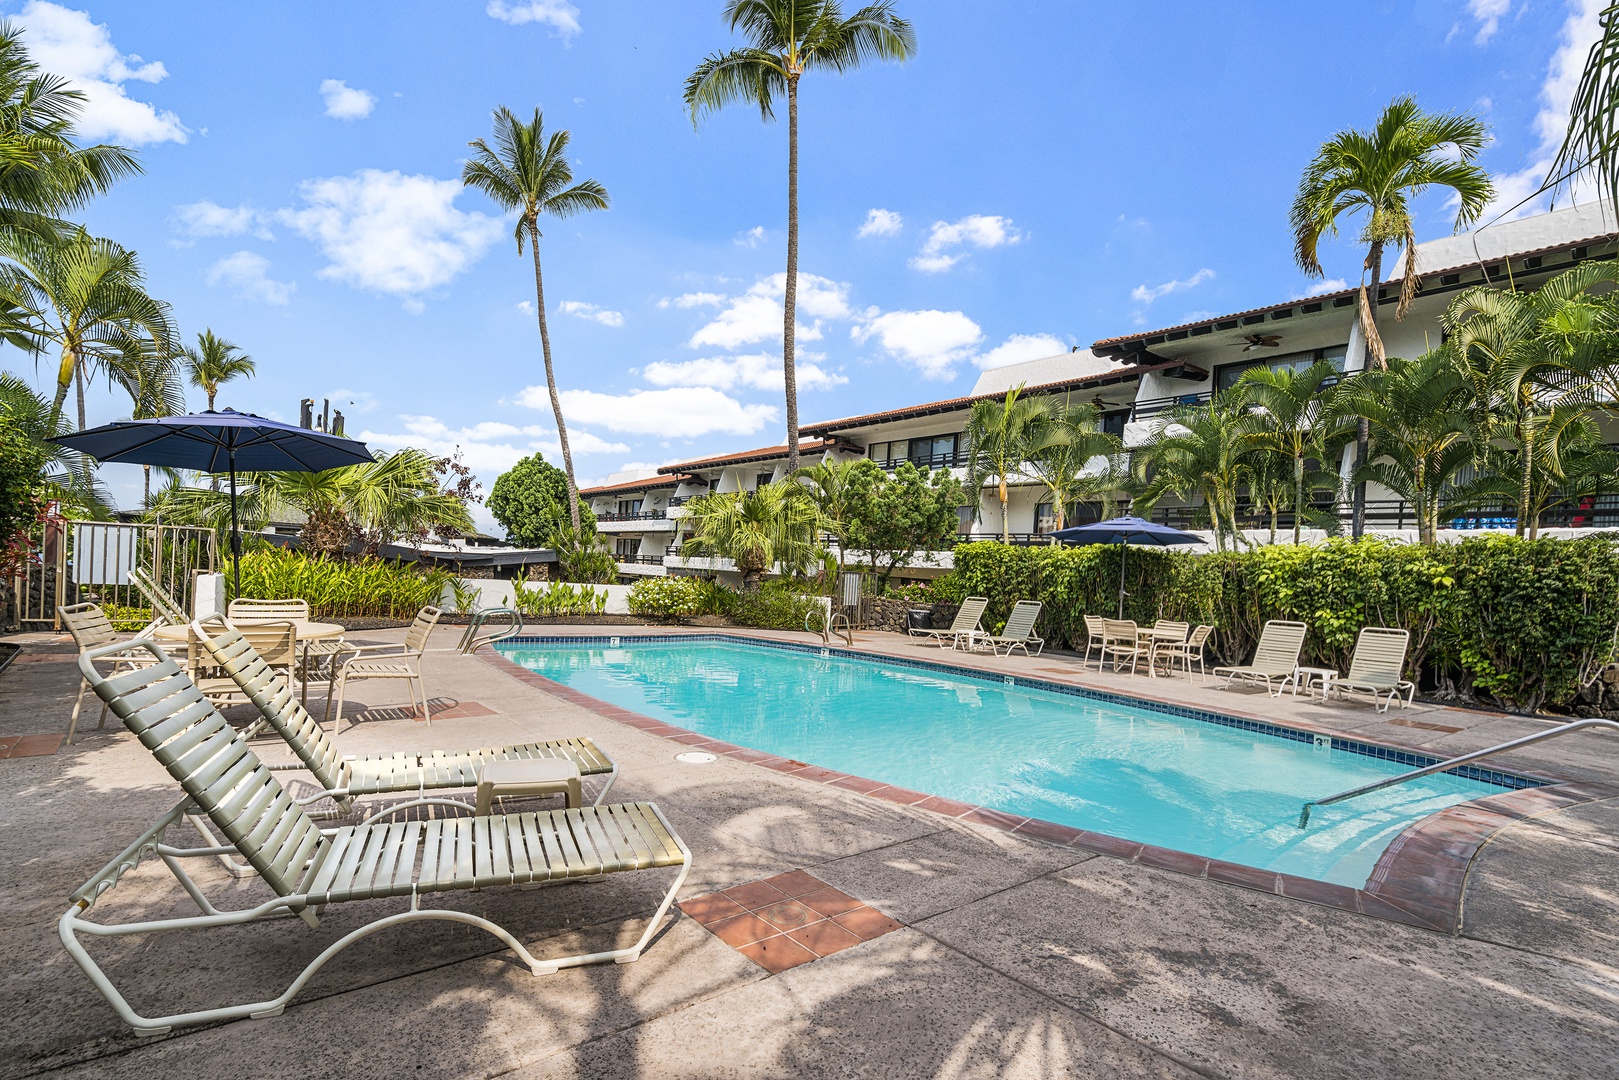 Kailua Kona Vacation Rentals, Casa De Emdeko 235 - 